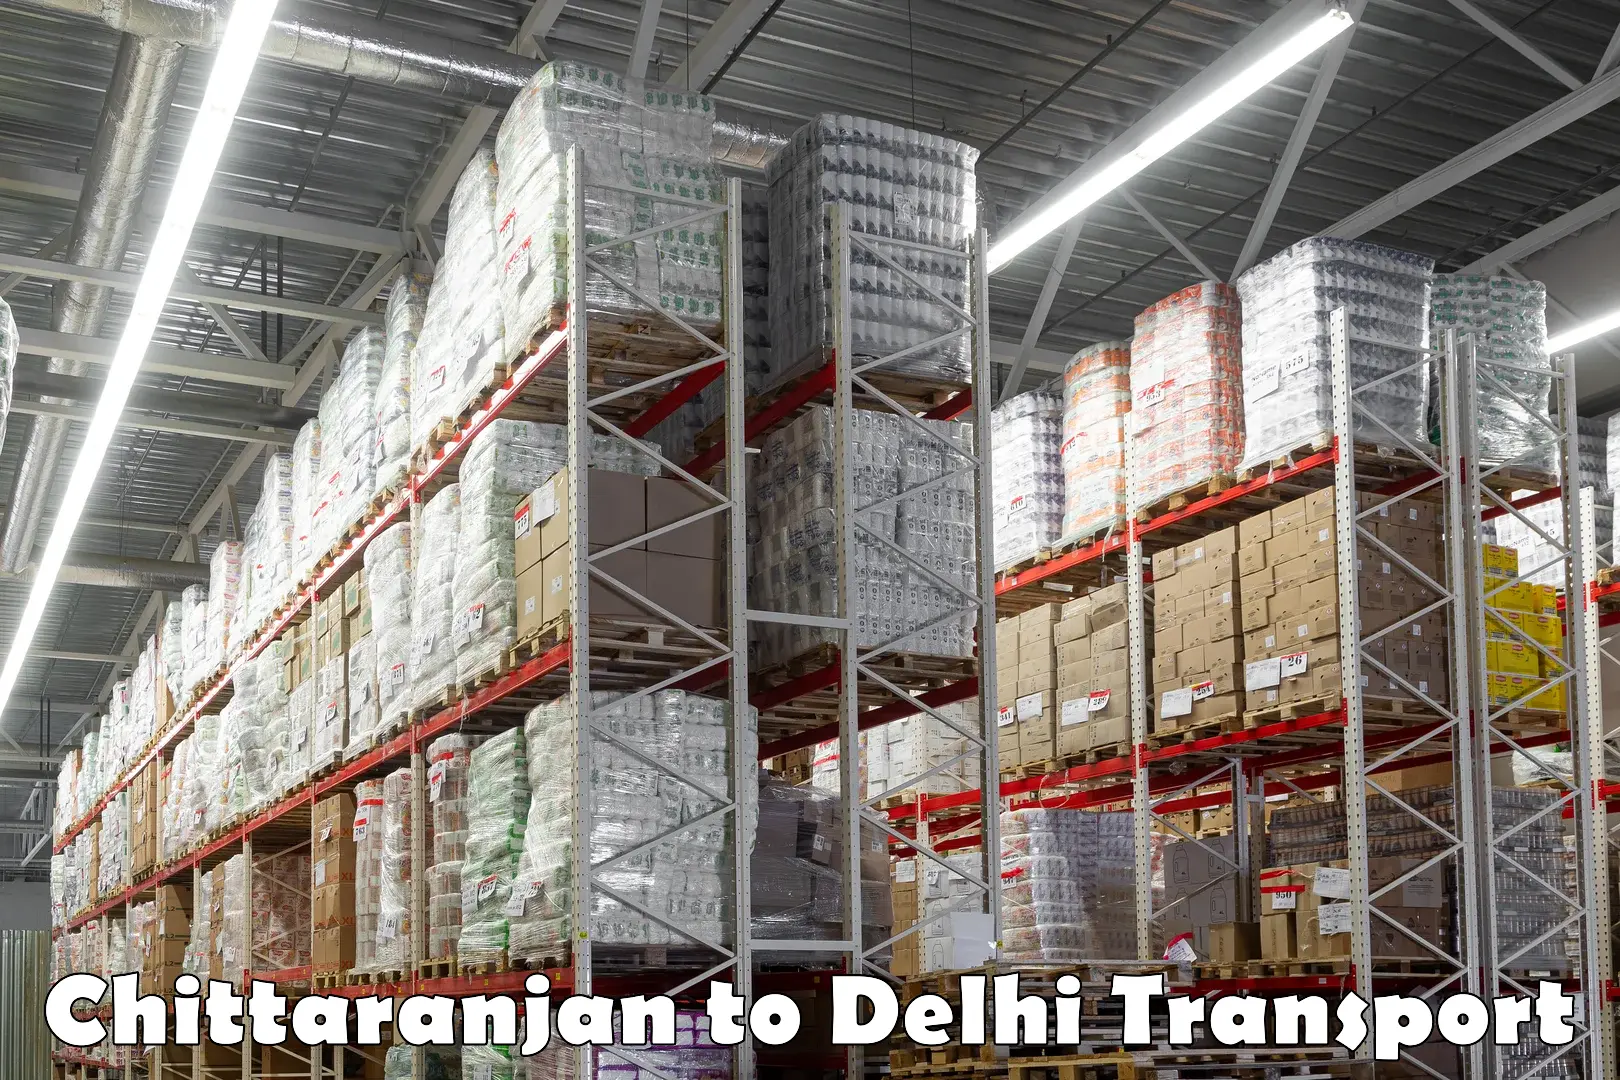 Transport in sharing Chittaranjan to Delhi